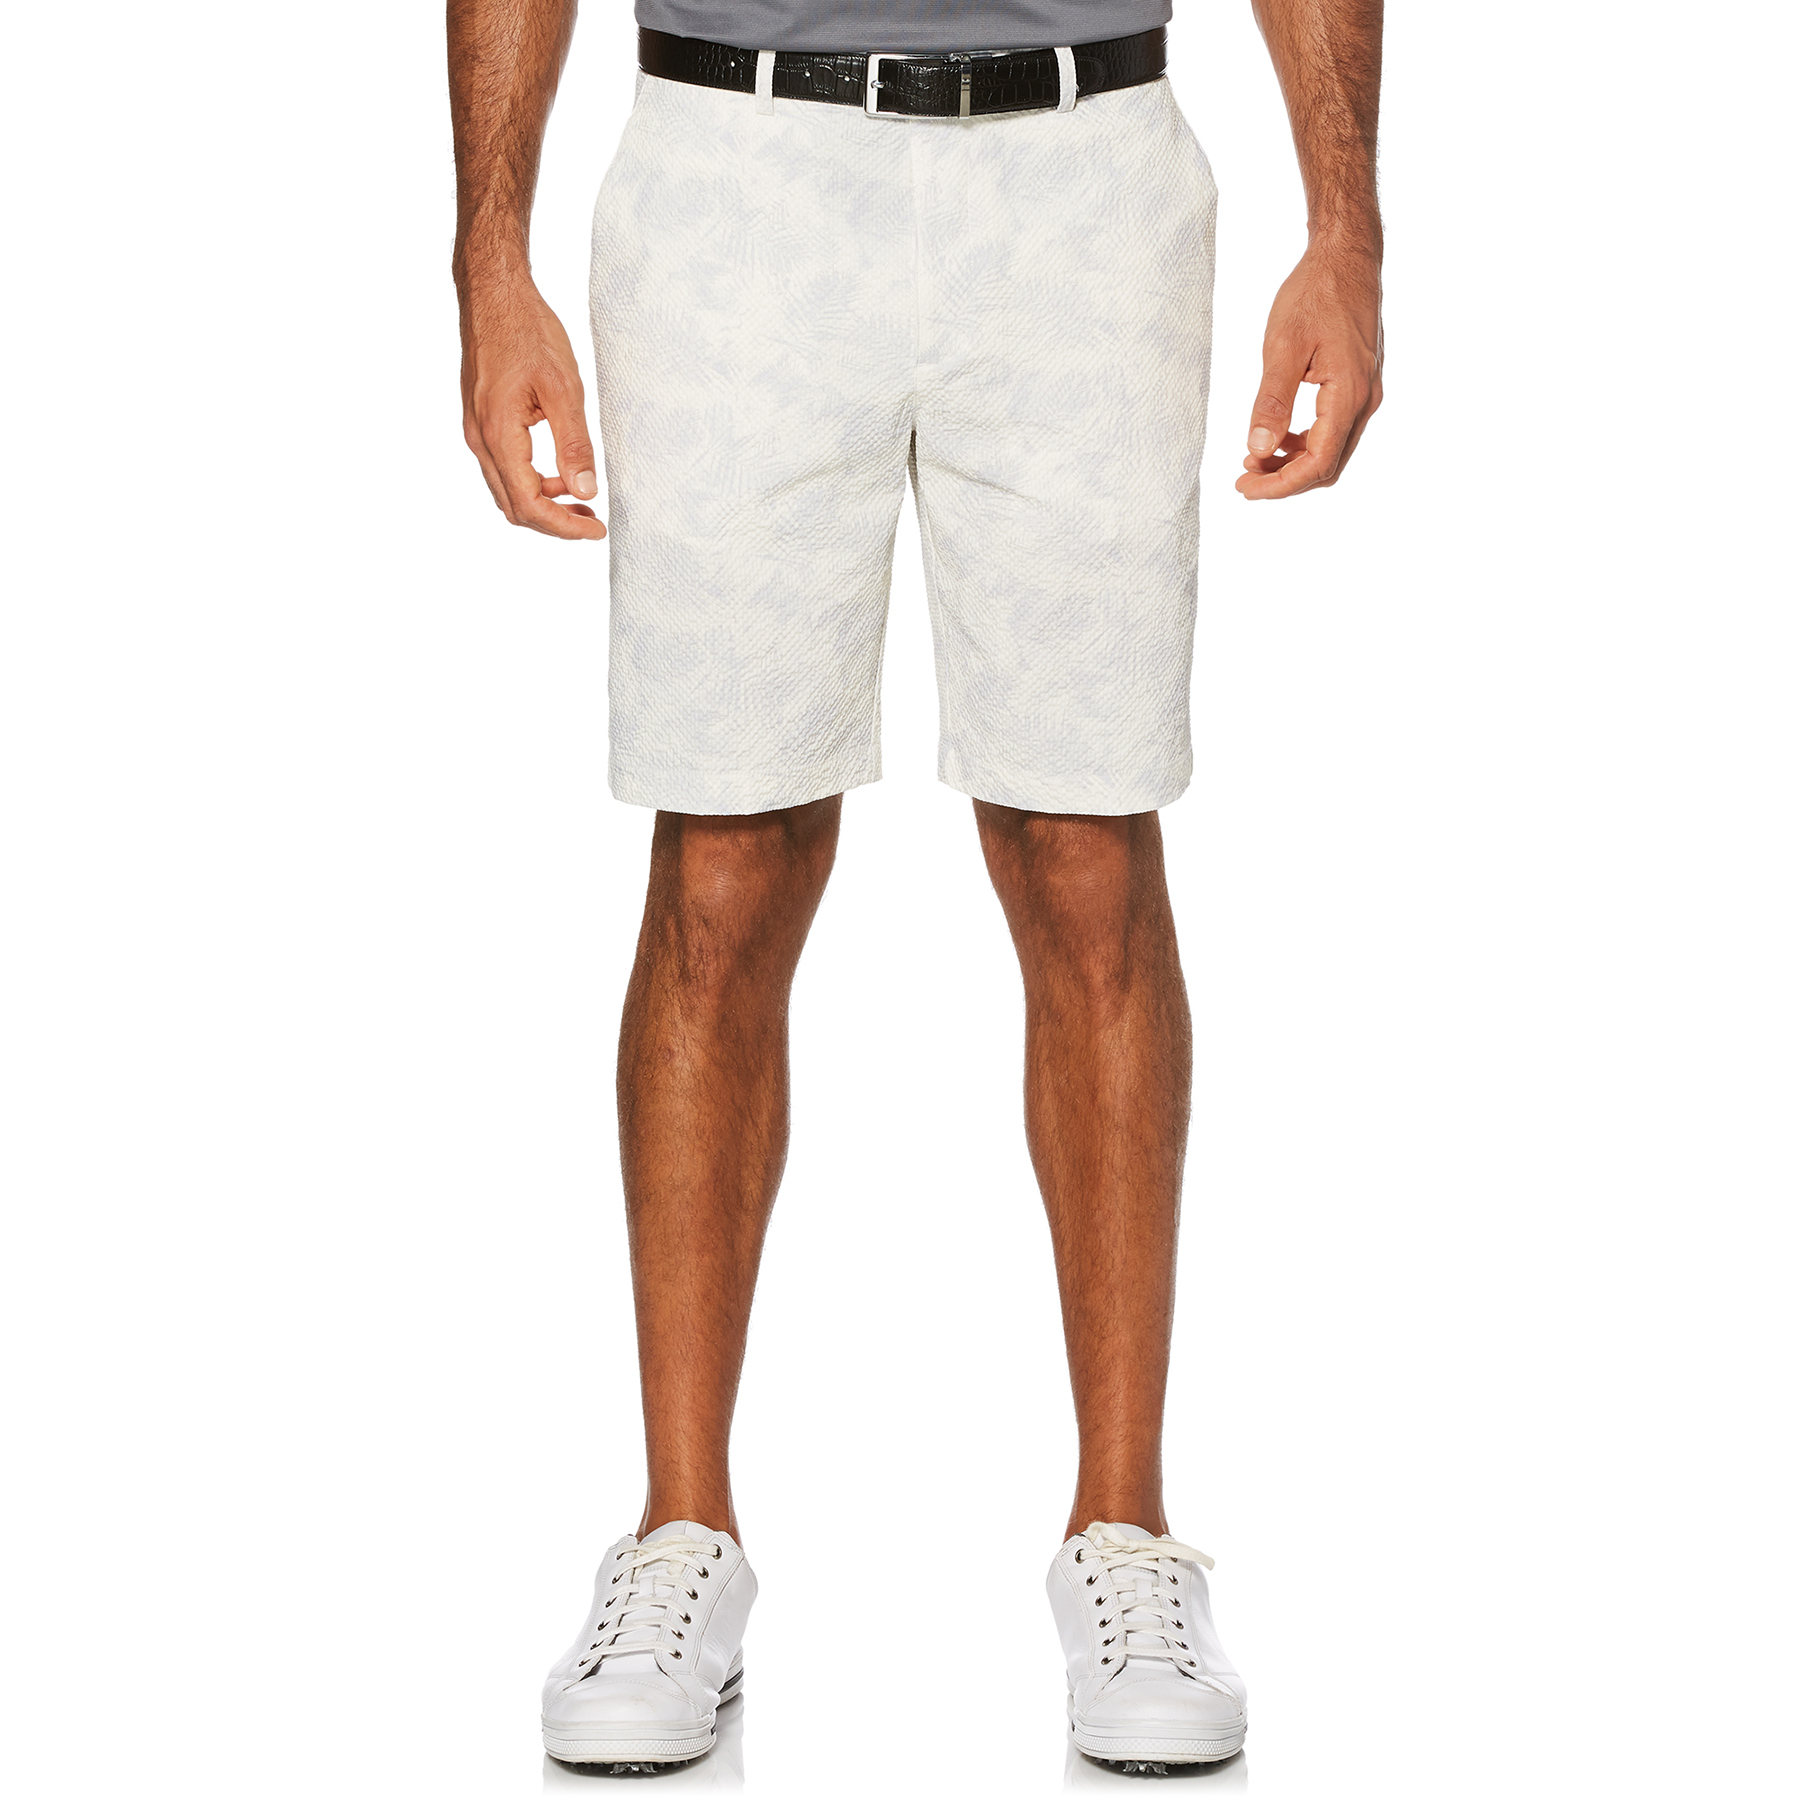 Izod #8082 NEW Men's Flat Front Striped 9.5 Inseam Seersucker 100% Cotton Shorts 